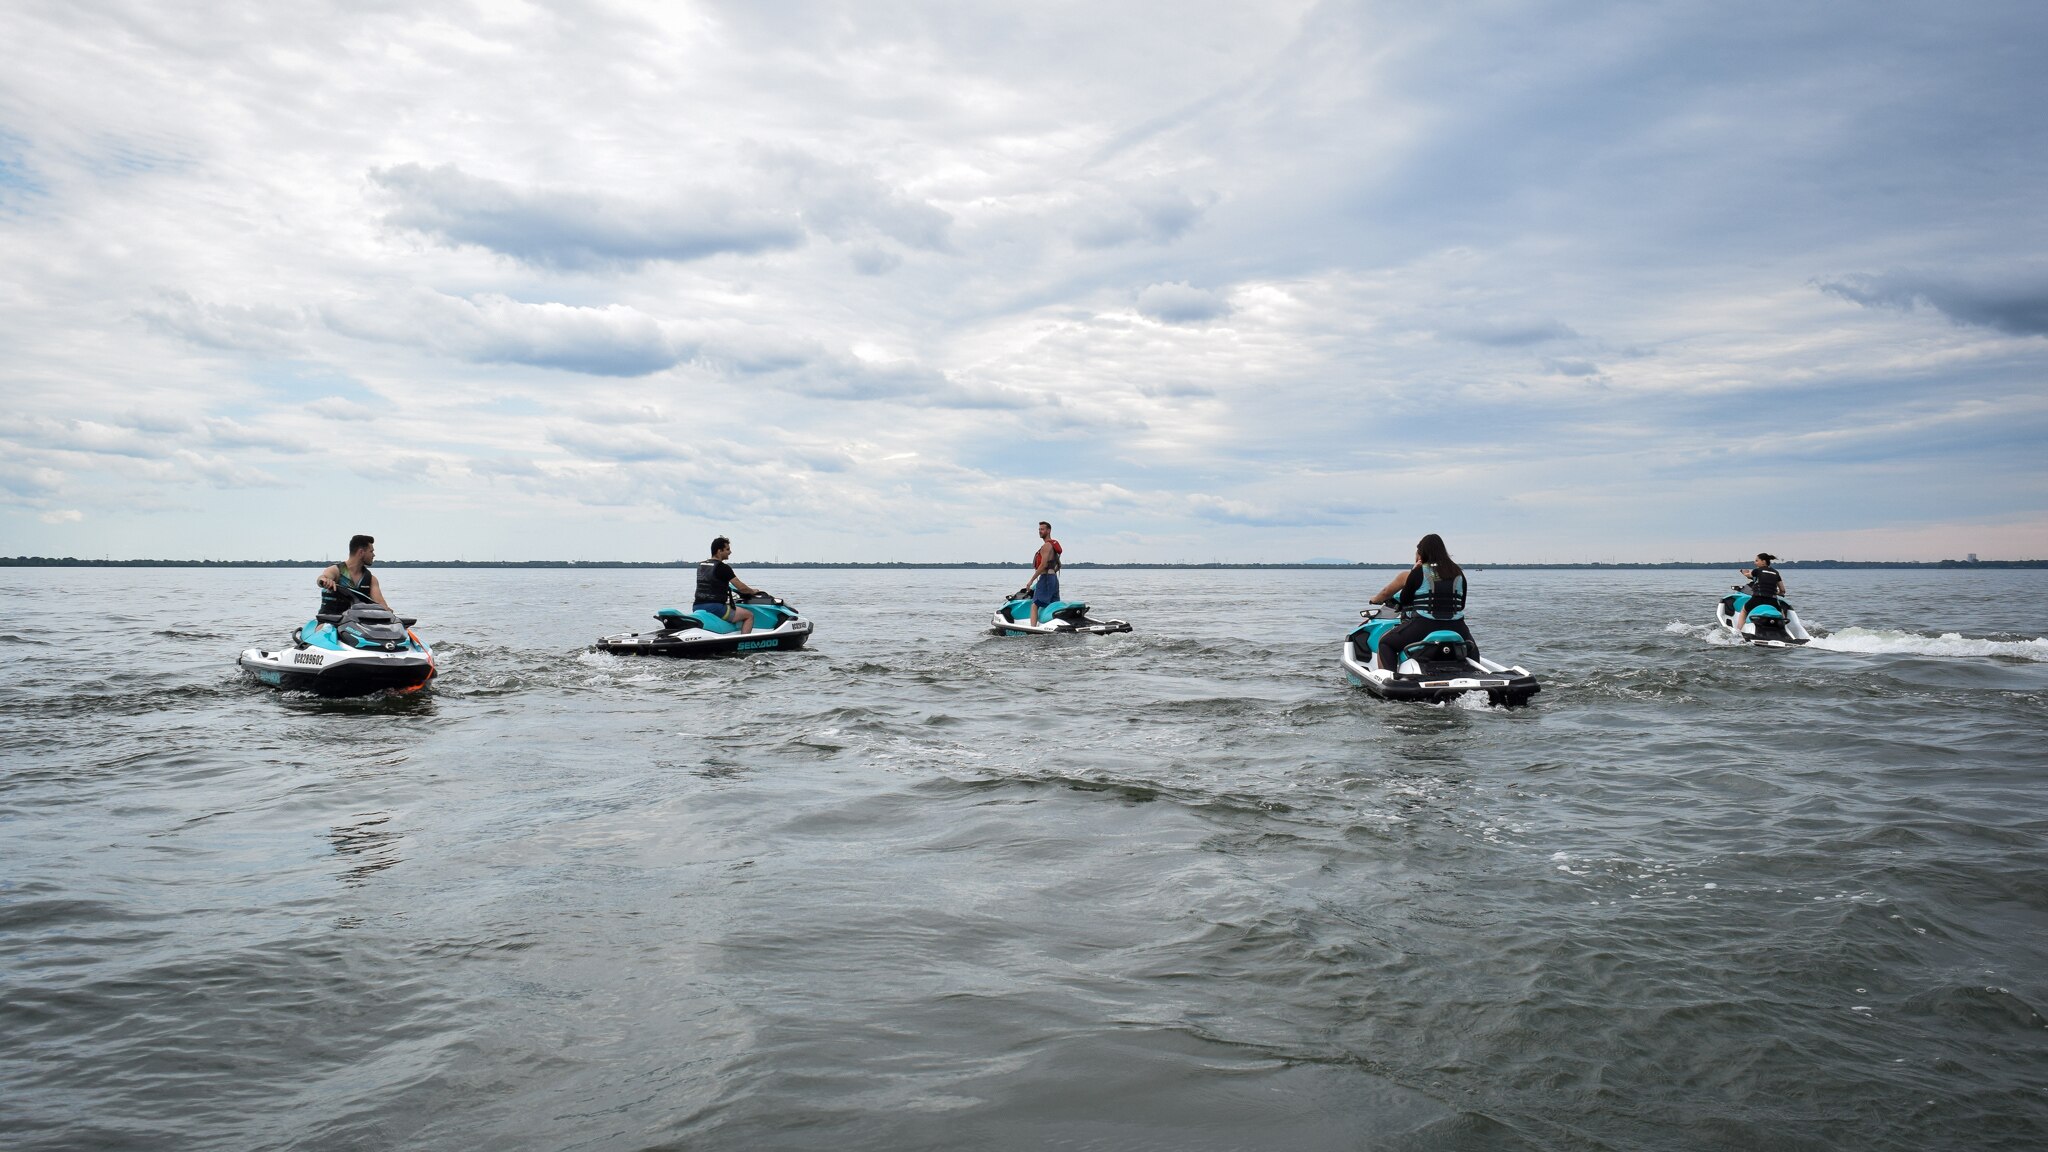 Un groupe de personnes sur des motomarines Sea-Doo discutant au milieu de l'eau